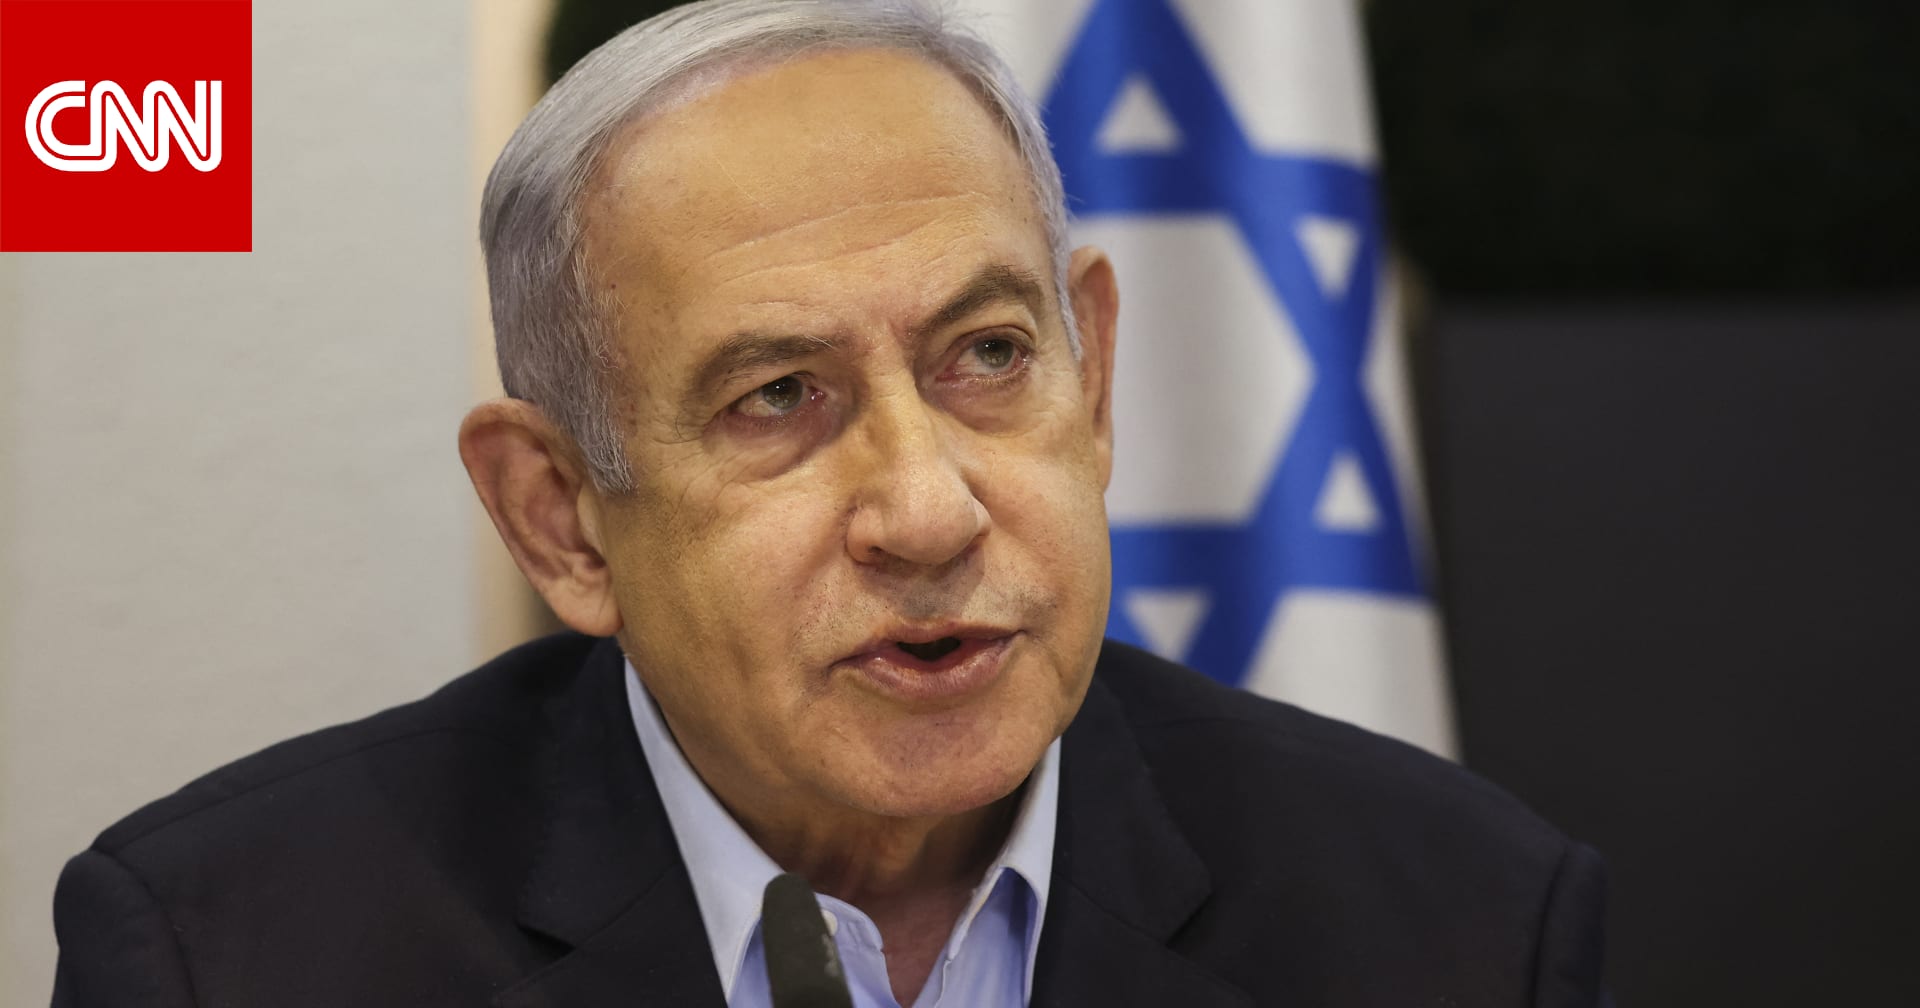 الحكومة الإسرائيلية تؤيد بالإجماع قرارا يرفض "الاعتراف الأحادي بالدولة الفلسطينية"